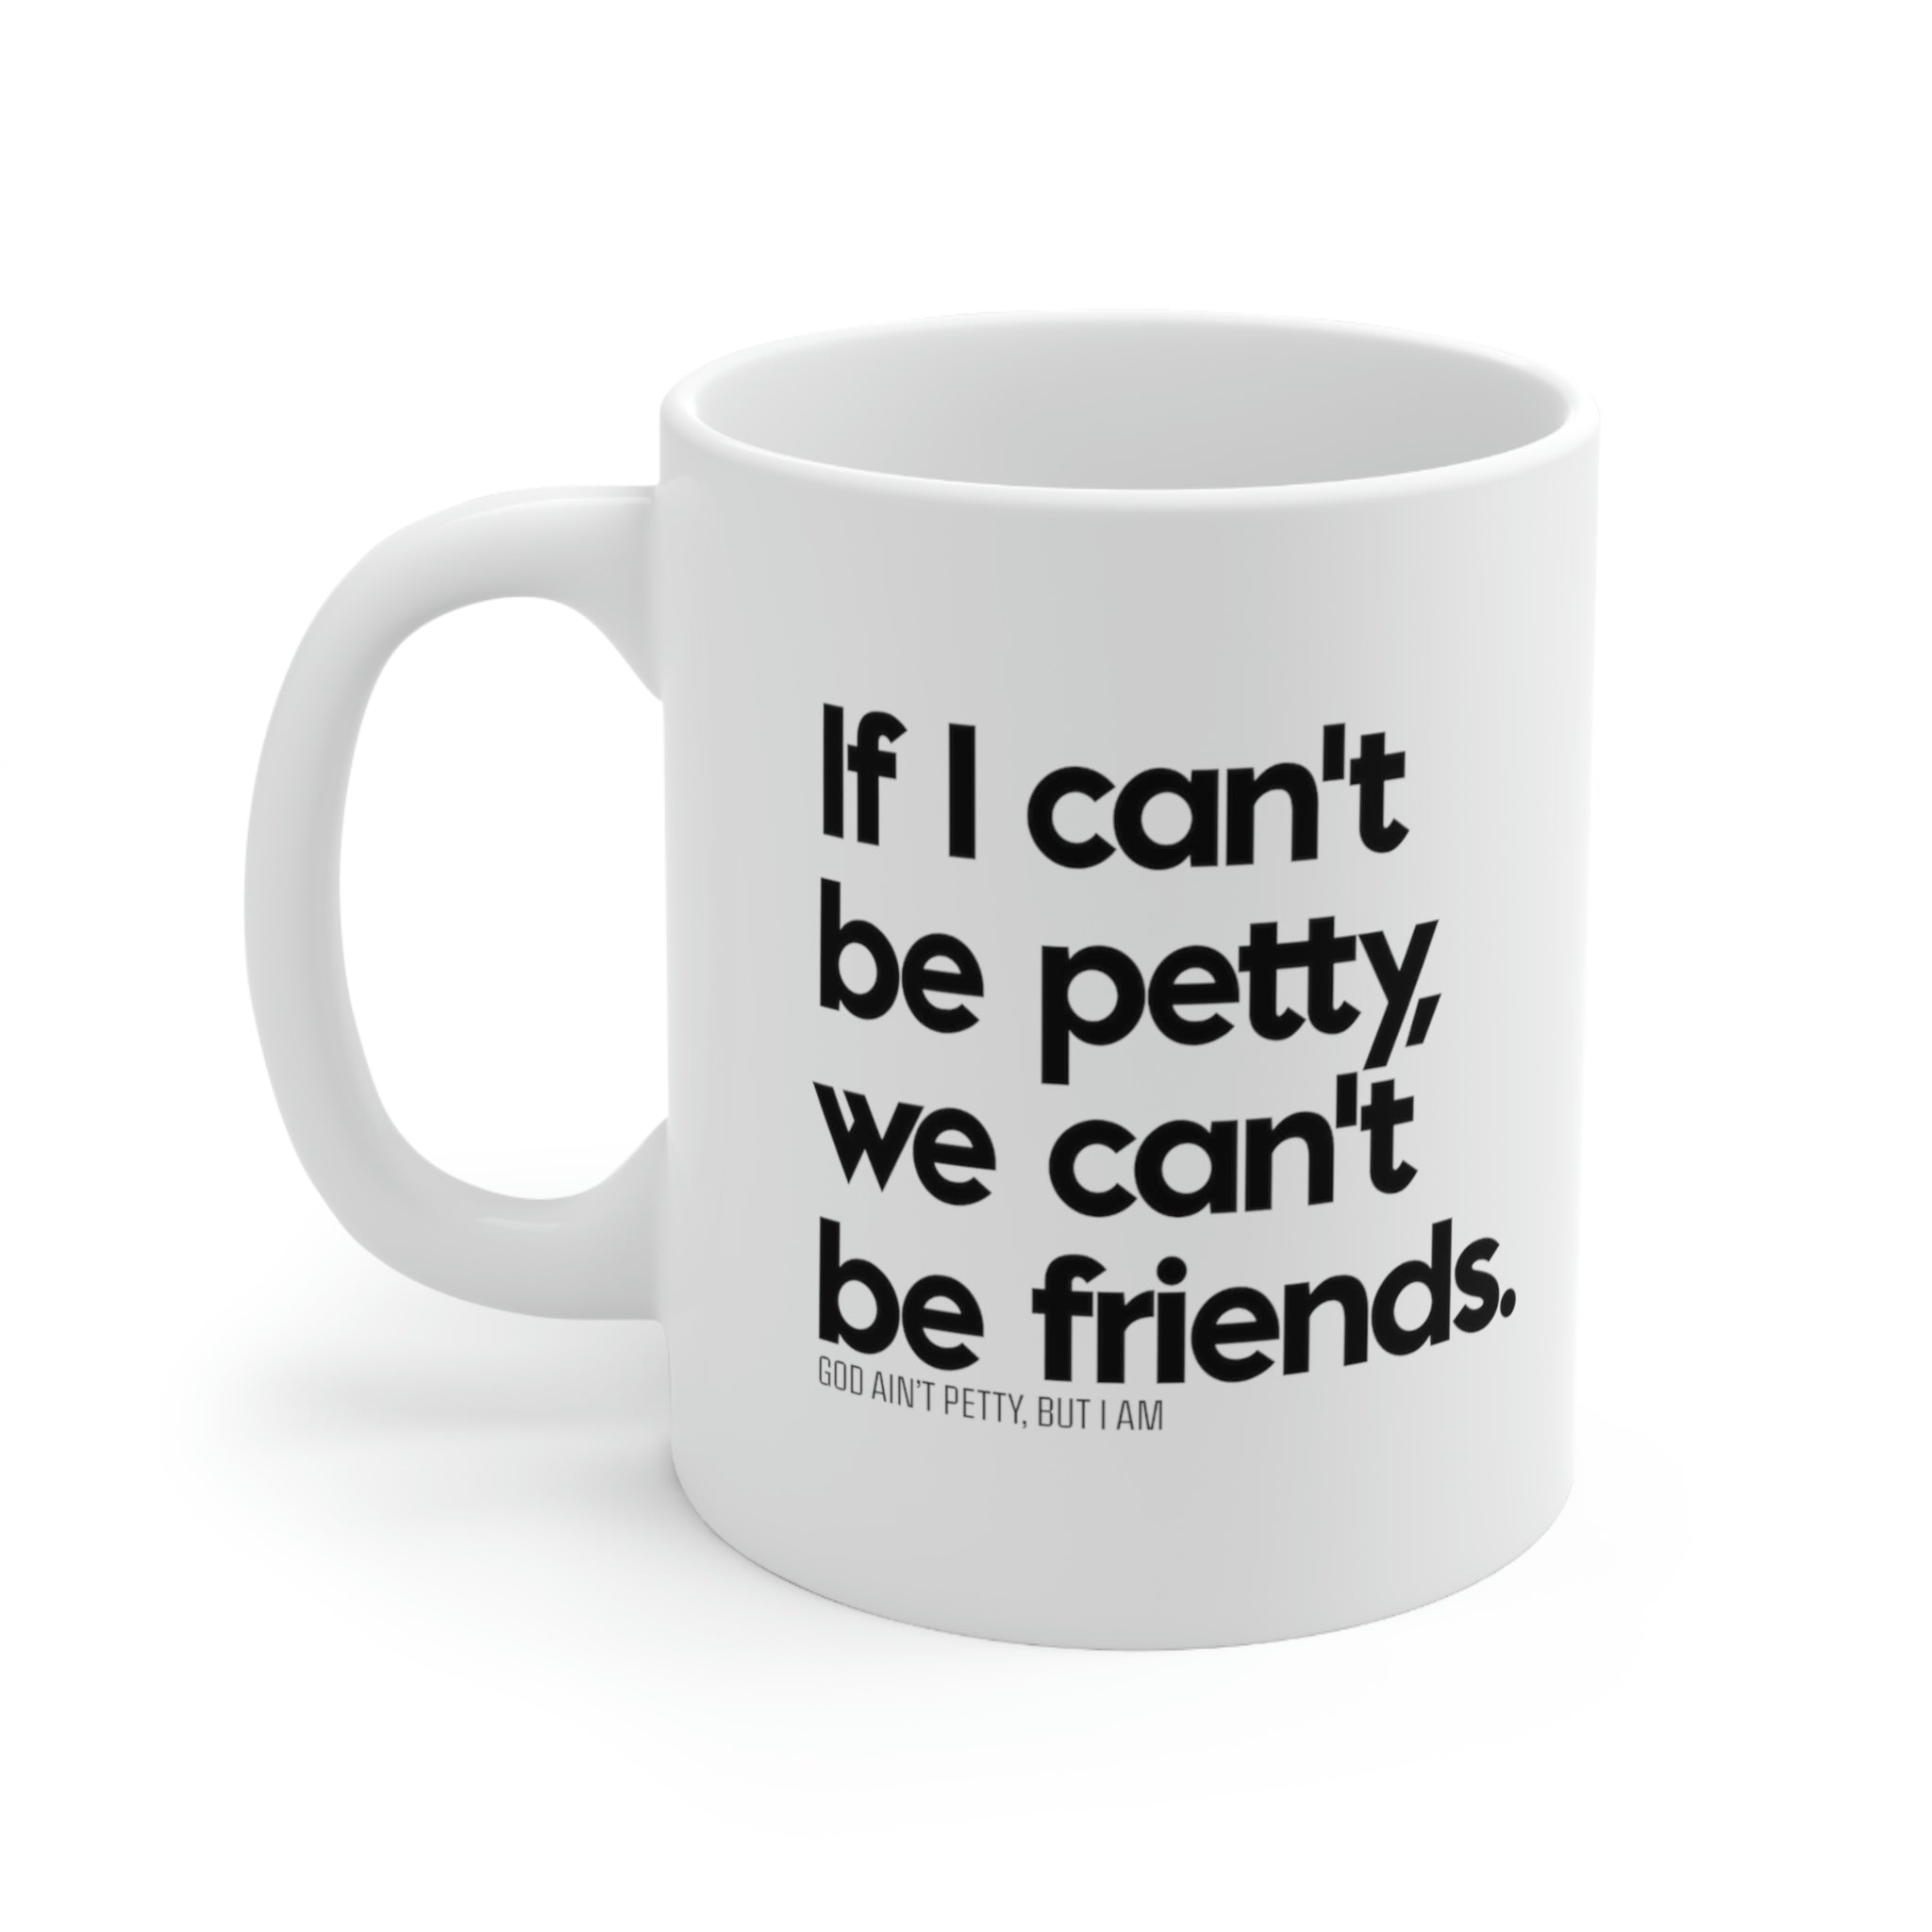 If I can't be petty we can't be friends Mug 11oz (White/Black)-Mug-The Original God Ain't Petty But I Am